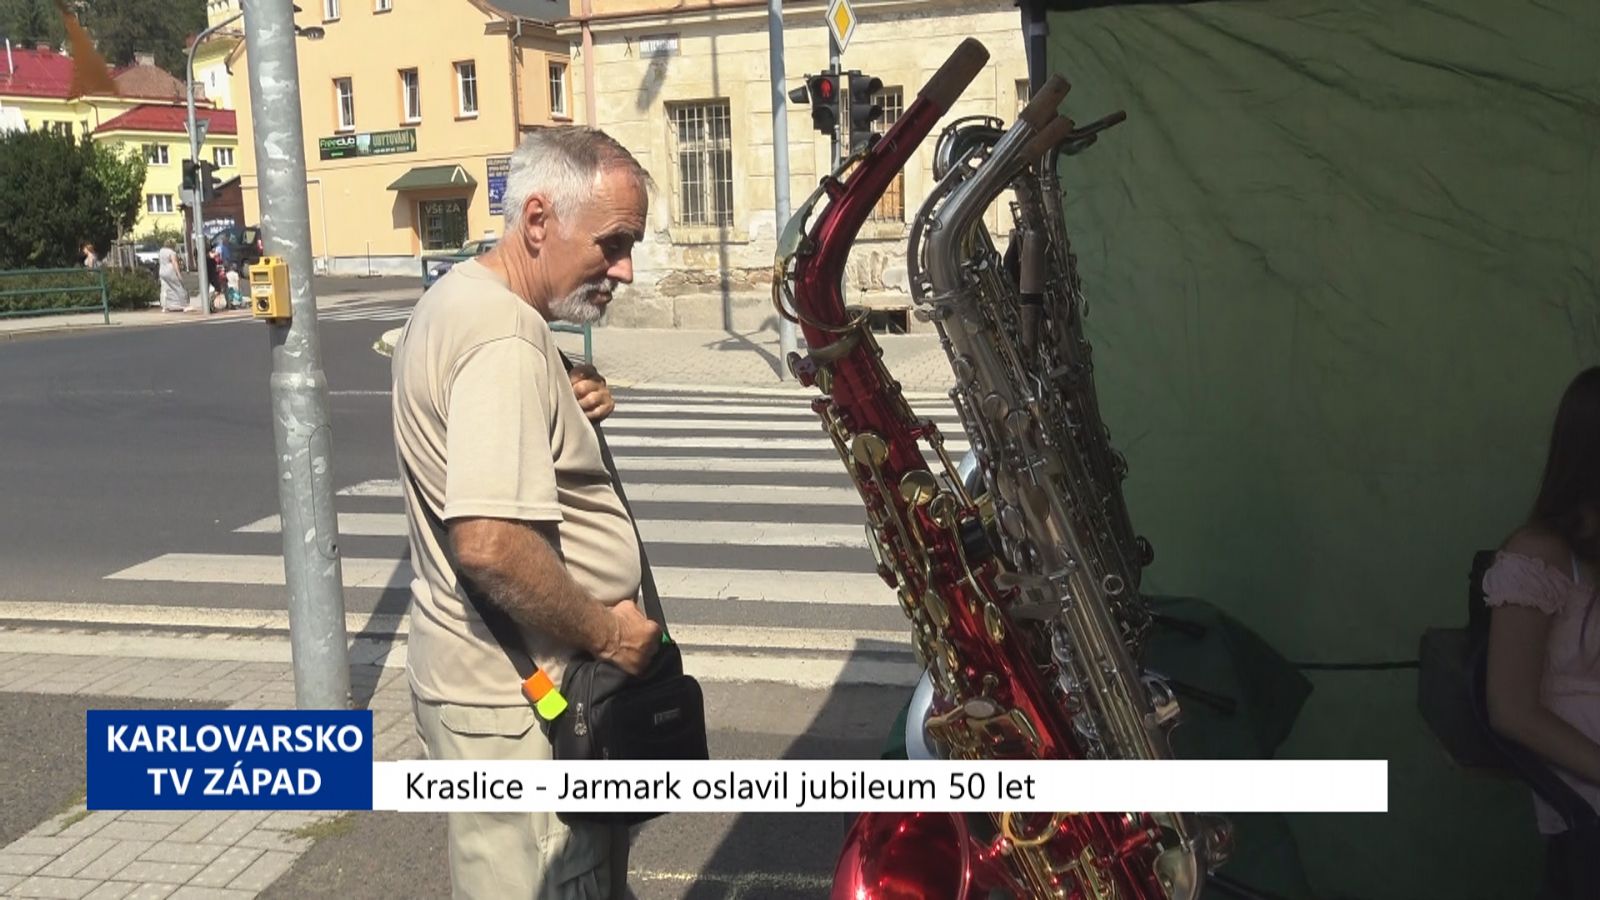 Kraslice: Jarmark oslavil jubileum 50 let (TV Západ)